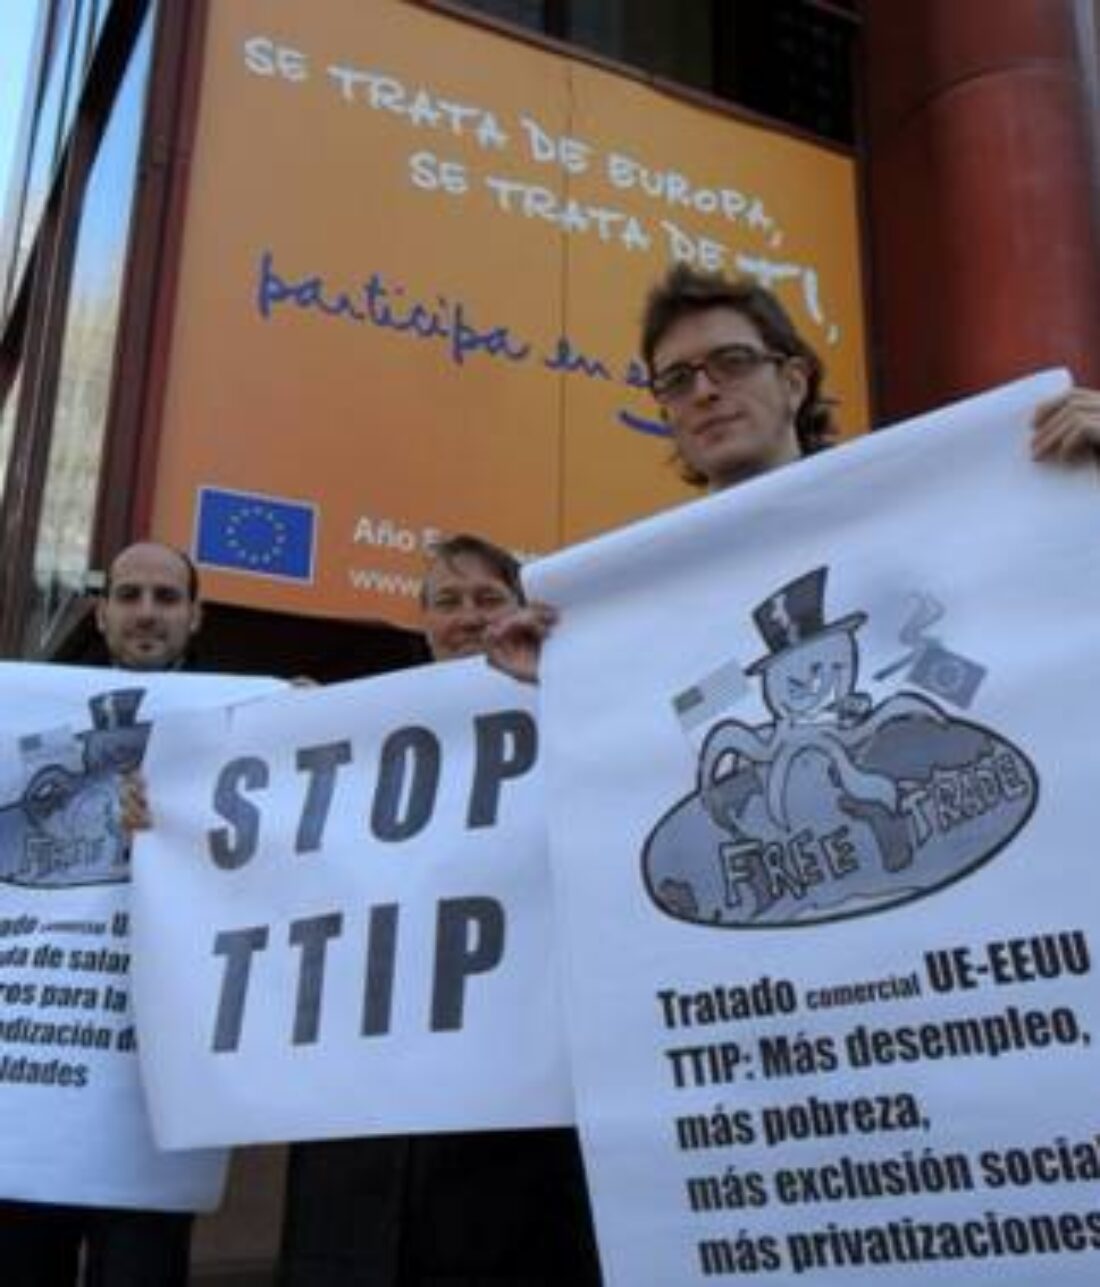 Hazte una foto diciendo No al TTIP